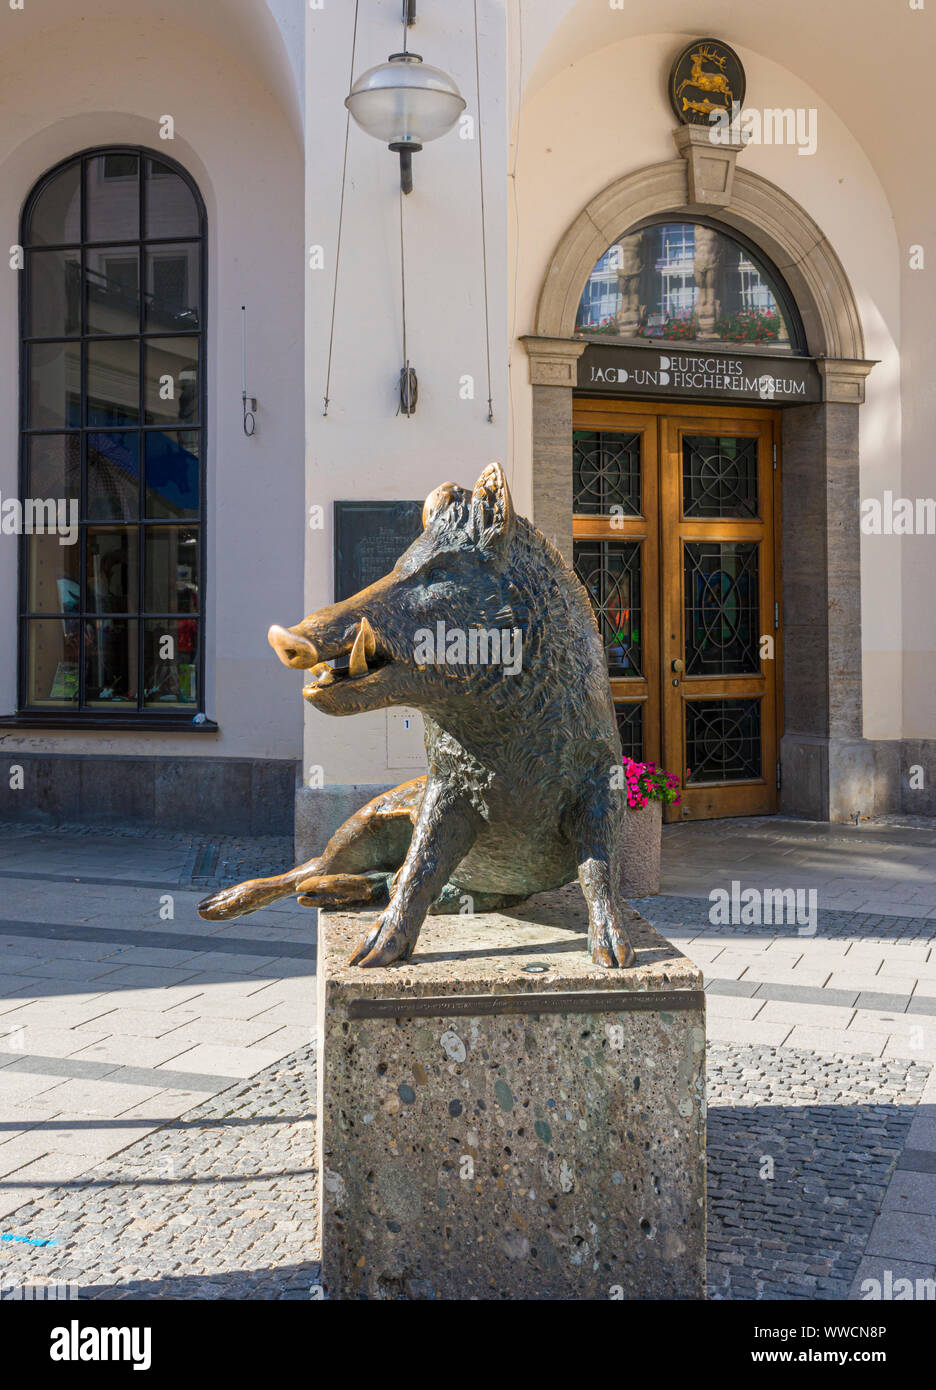 Bronze Wildschwein Statue außerhalb der Jagd- und Fischereimuseum, München, Deutschland Stockfoto